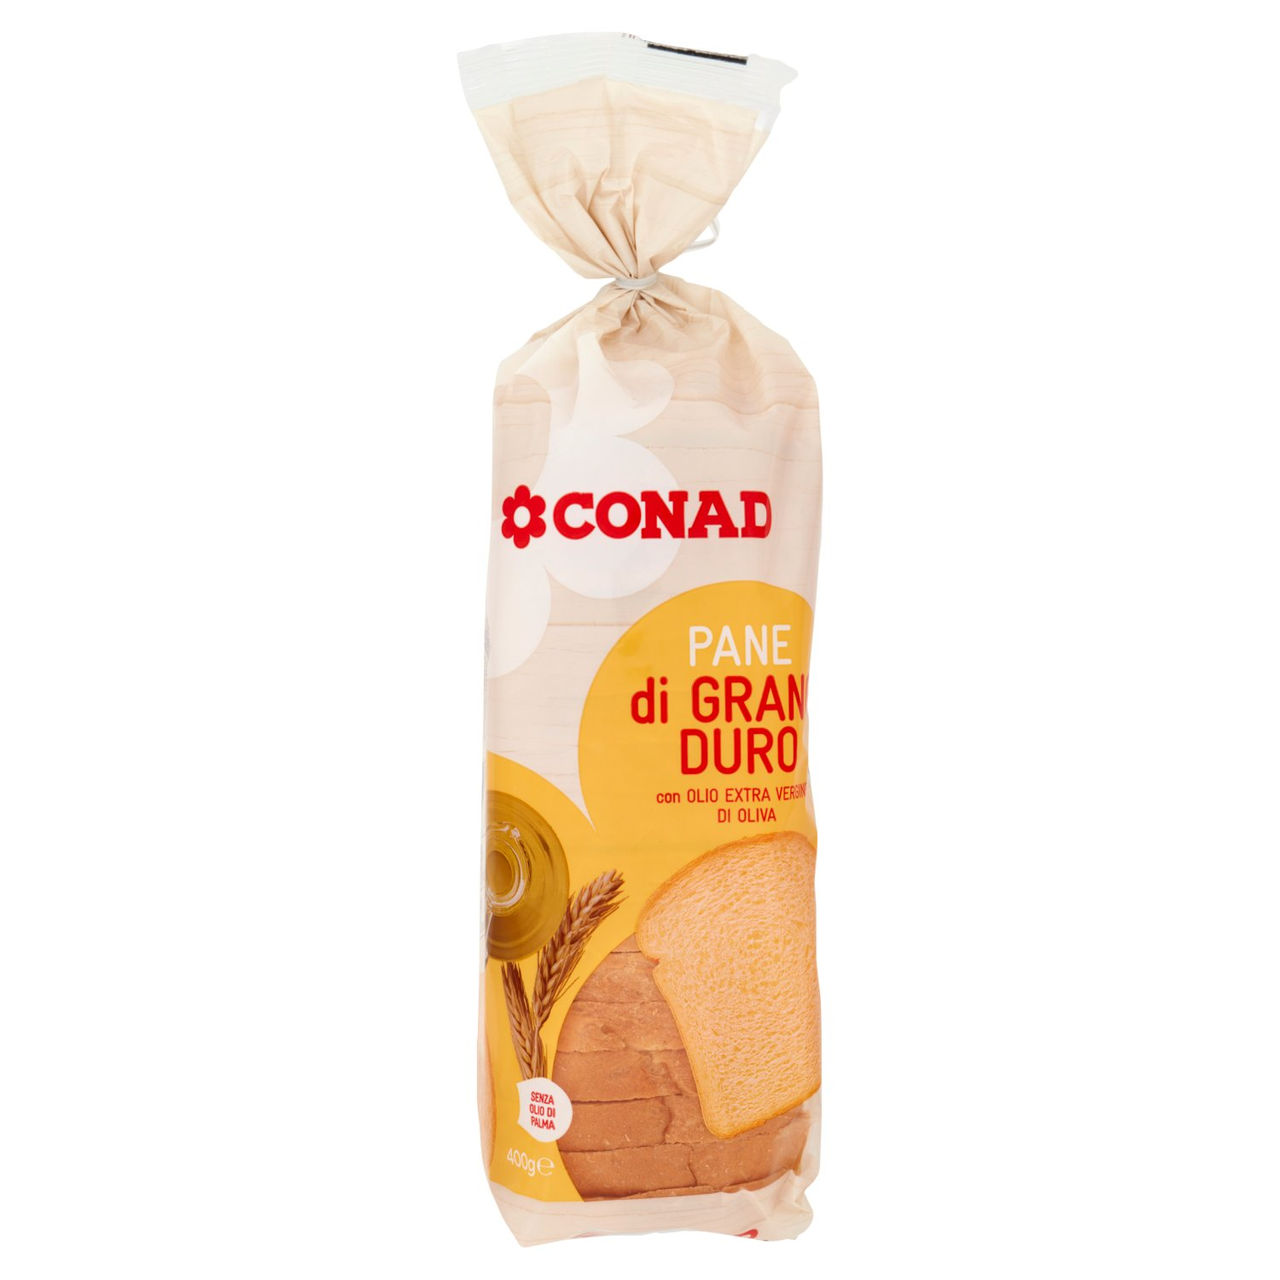 Pane di grano duro con olio EVO Conad